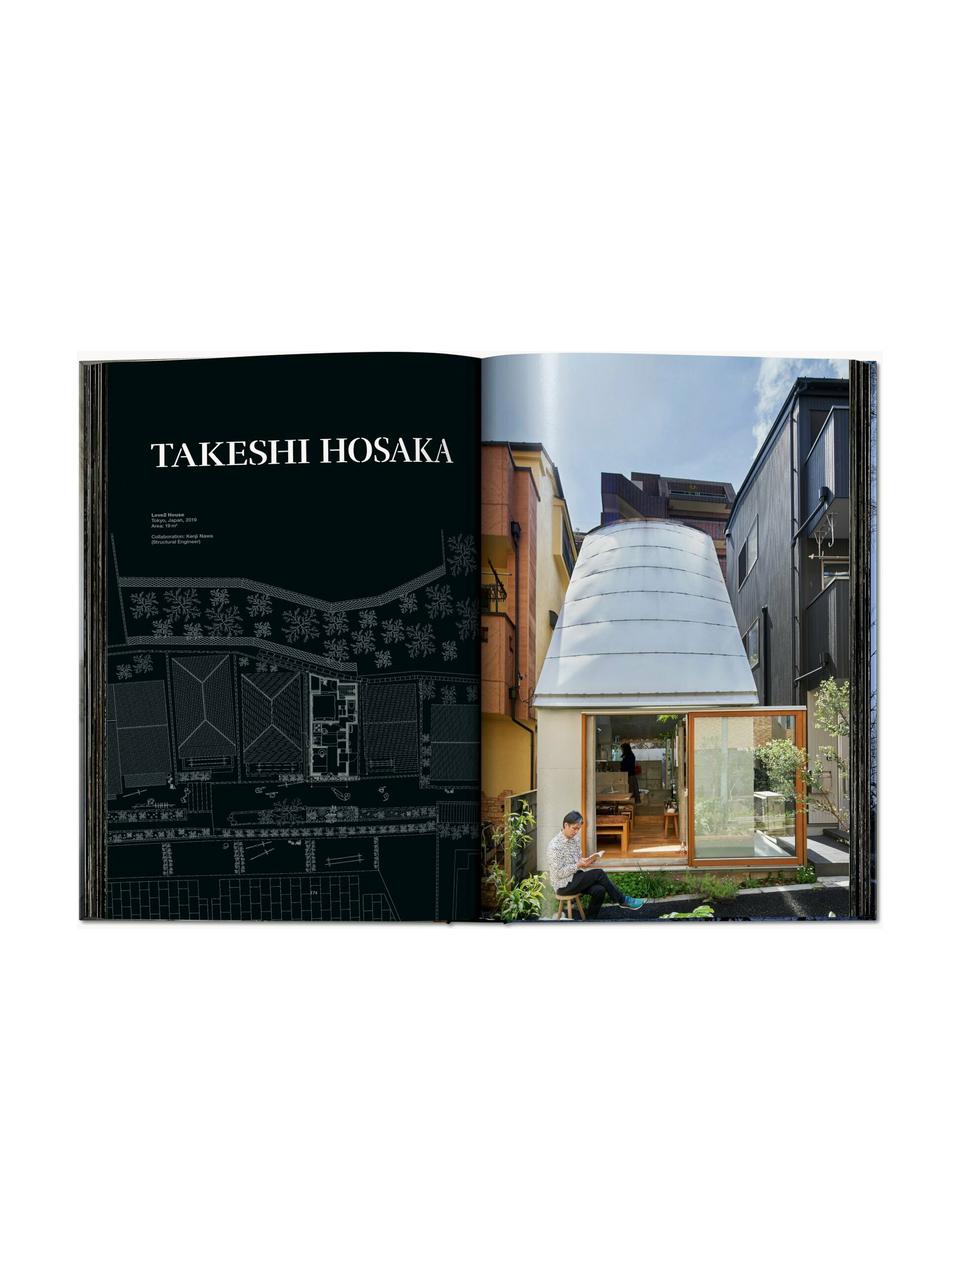 Obrázková kniha Homes for our Time - Small House, Papír, pevná vazba, Small Houses, Š 25 cm, V 37 cm